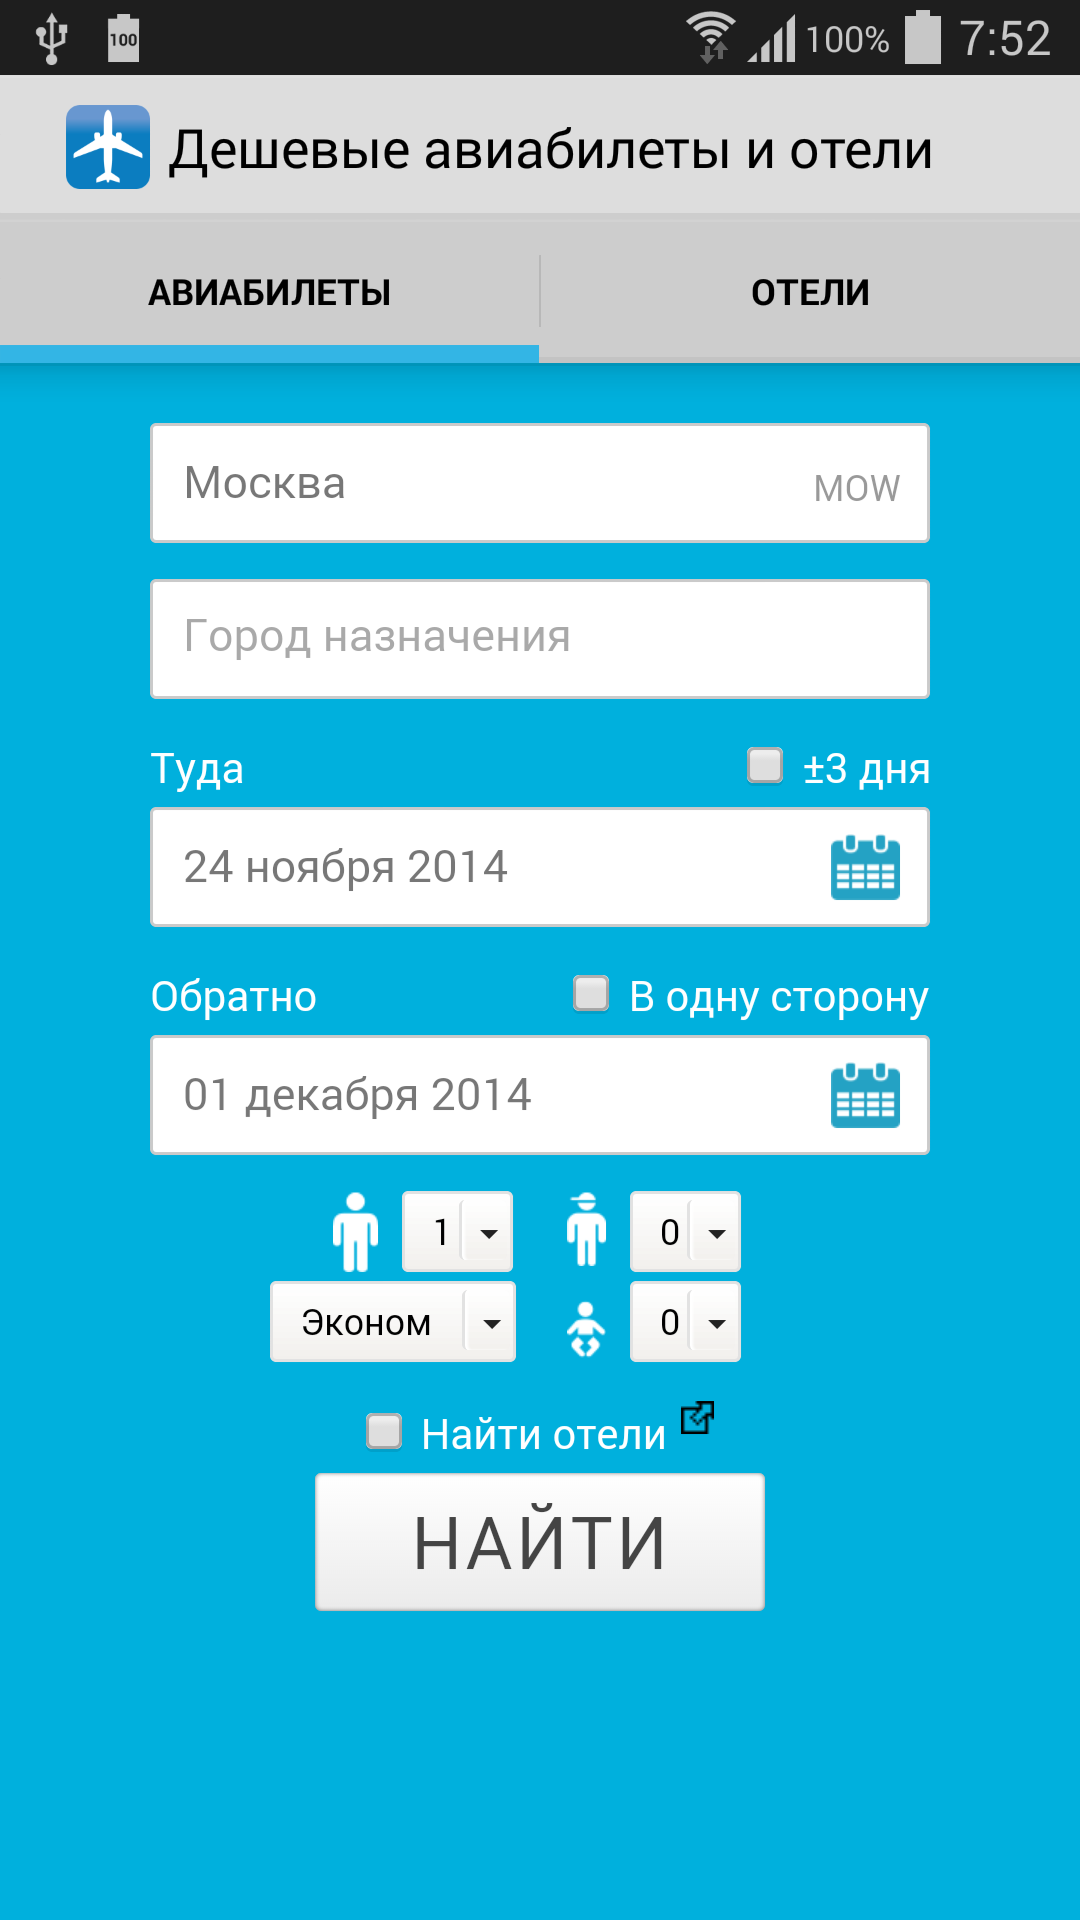 Android application Дешевые авиабилеты screenshort